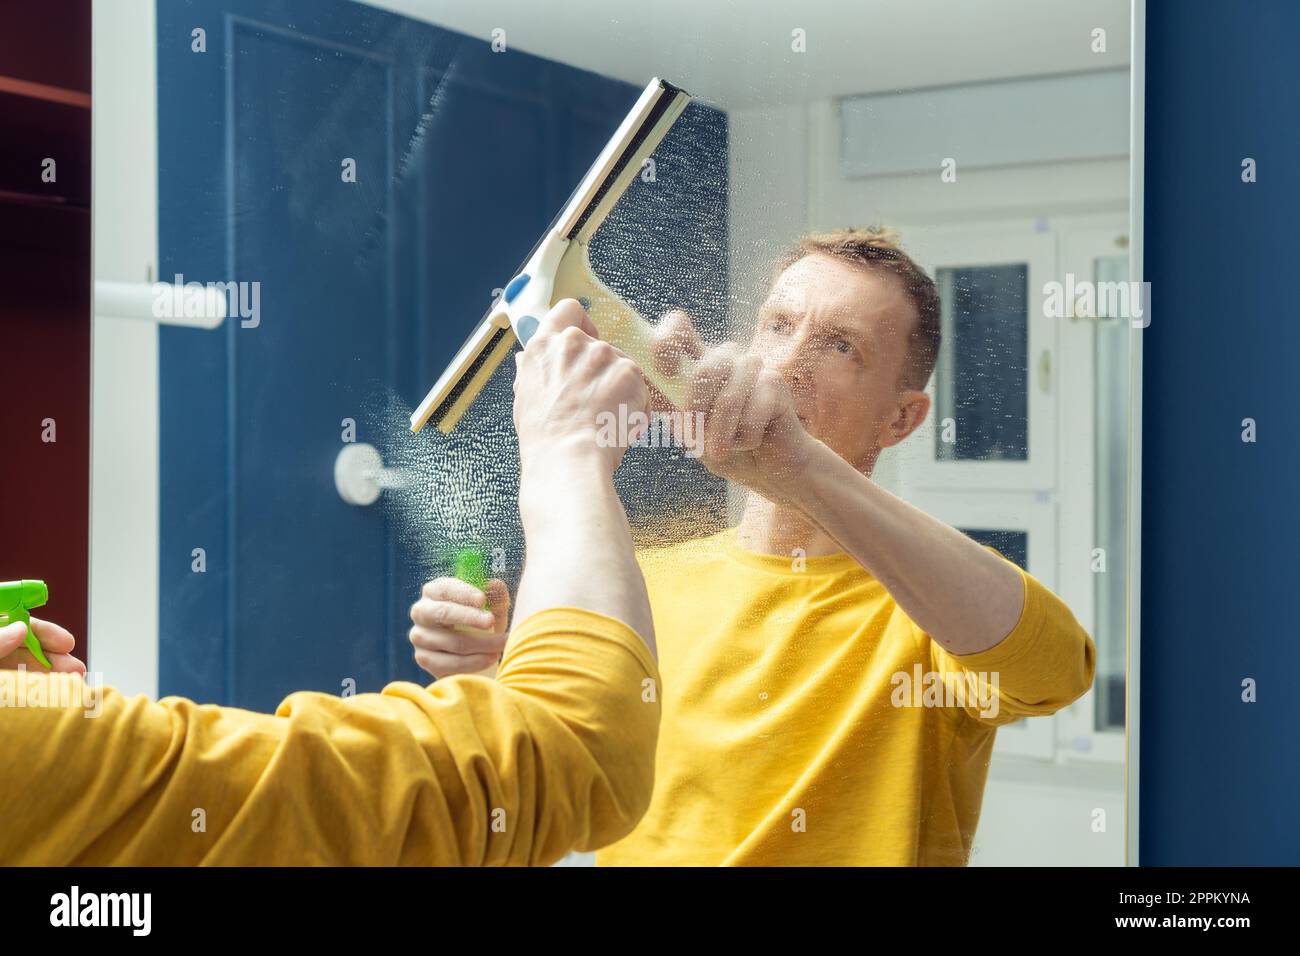 Sprühreiniger für Männer mittleren Alters auf Spiegel der Schranktür und mit Kunststoffbürste abwischen. Polnischer Spiegel. Stockfoto